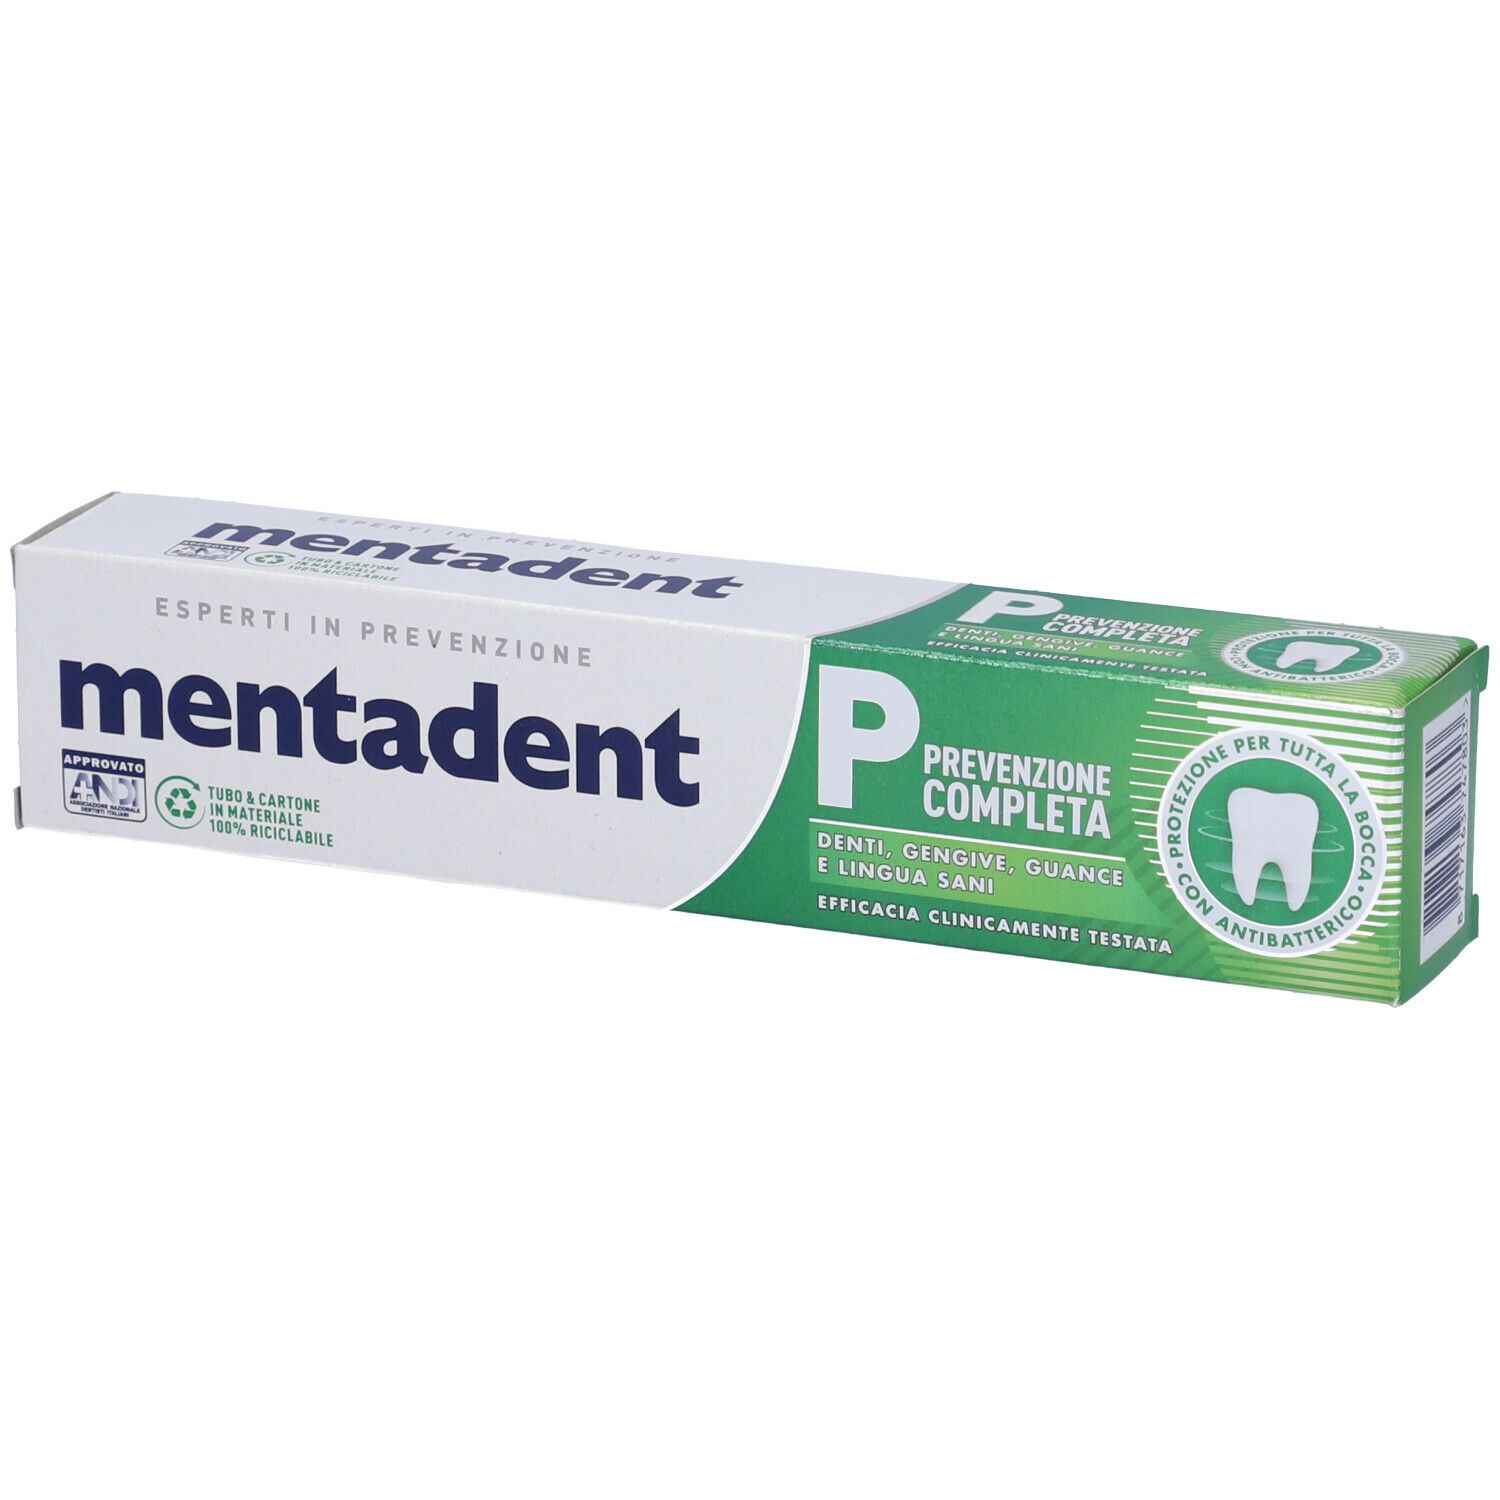 MENTADENT P Prevenzione Completa con antibatterico